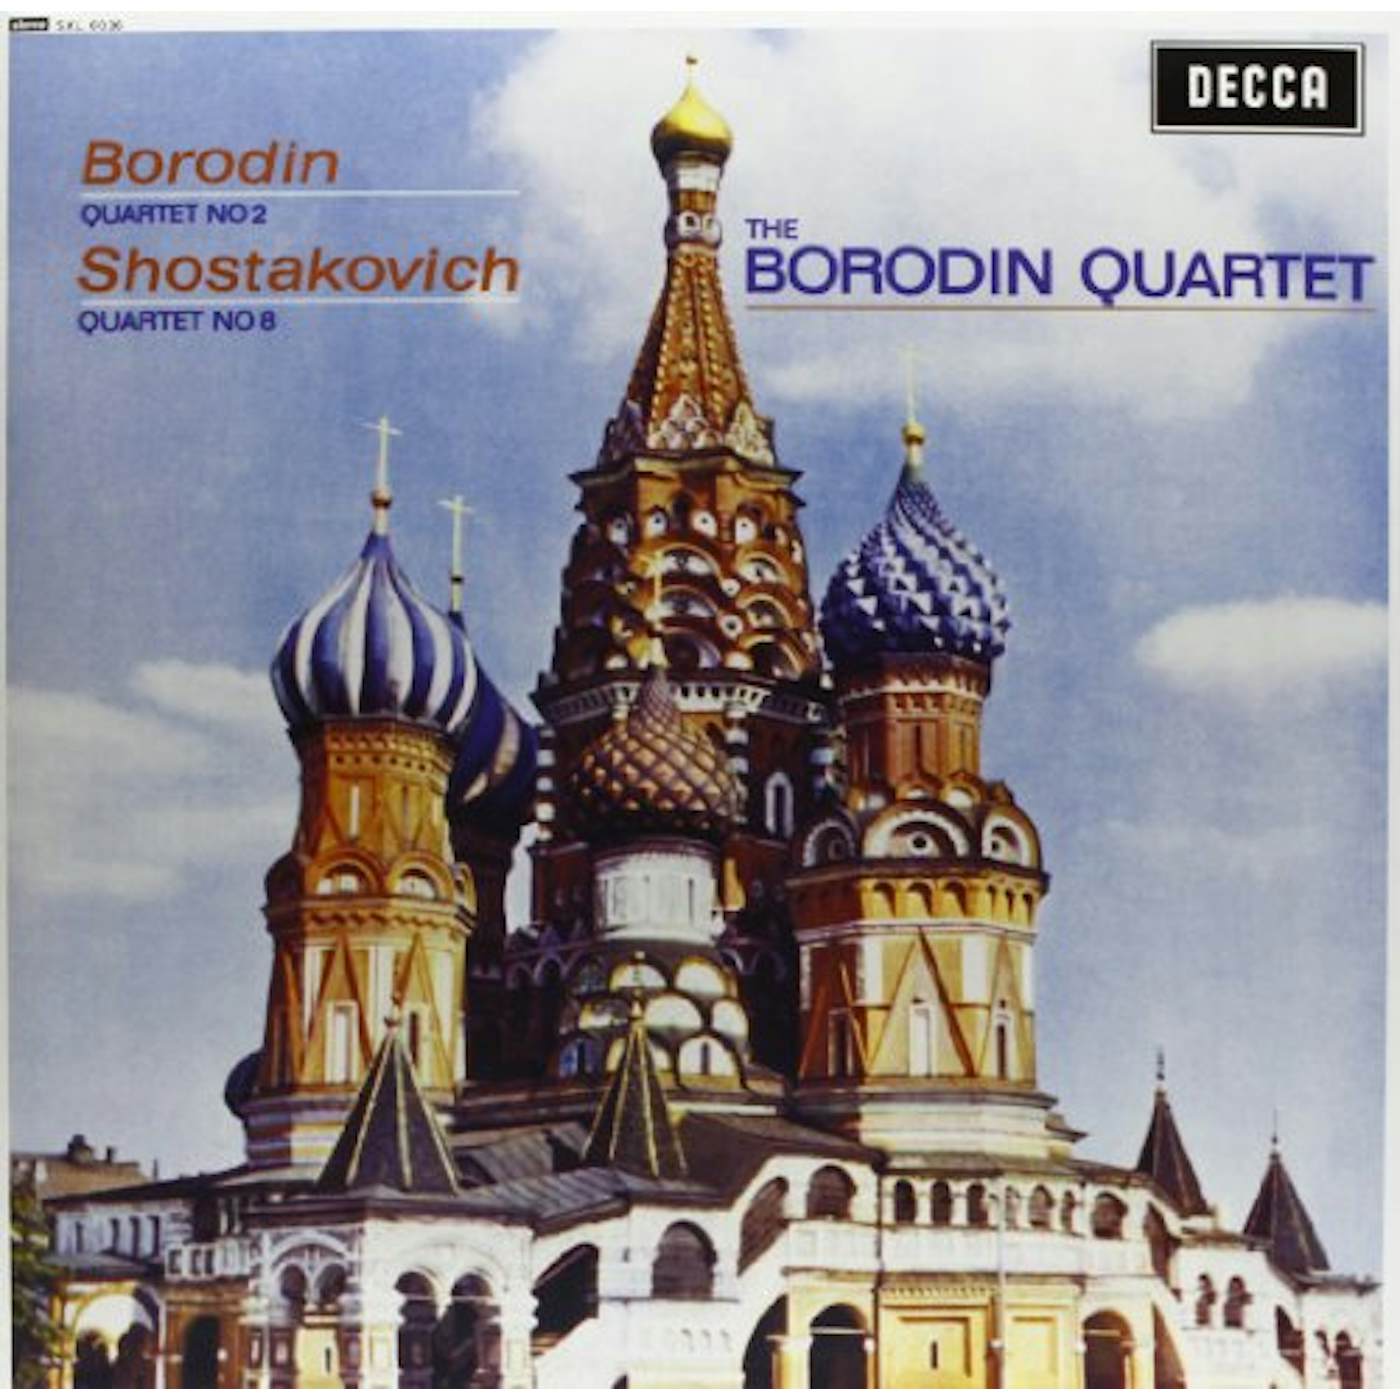 Borodin Quartet STRING QUARTET 2 Vinyl Record